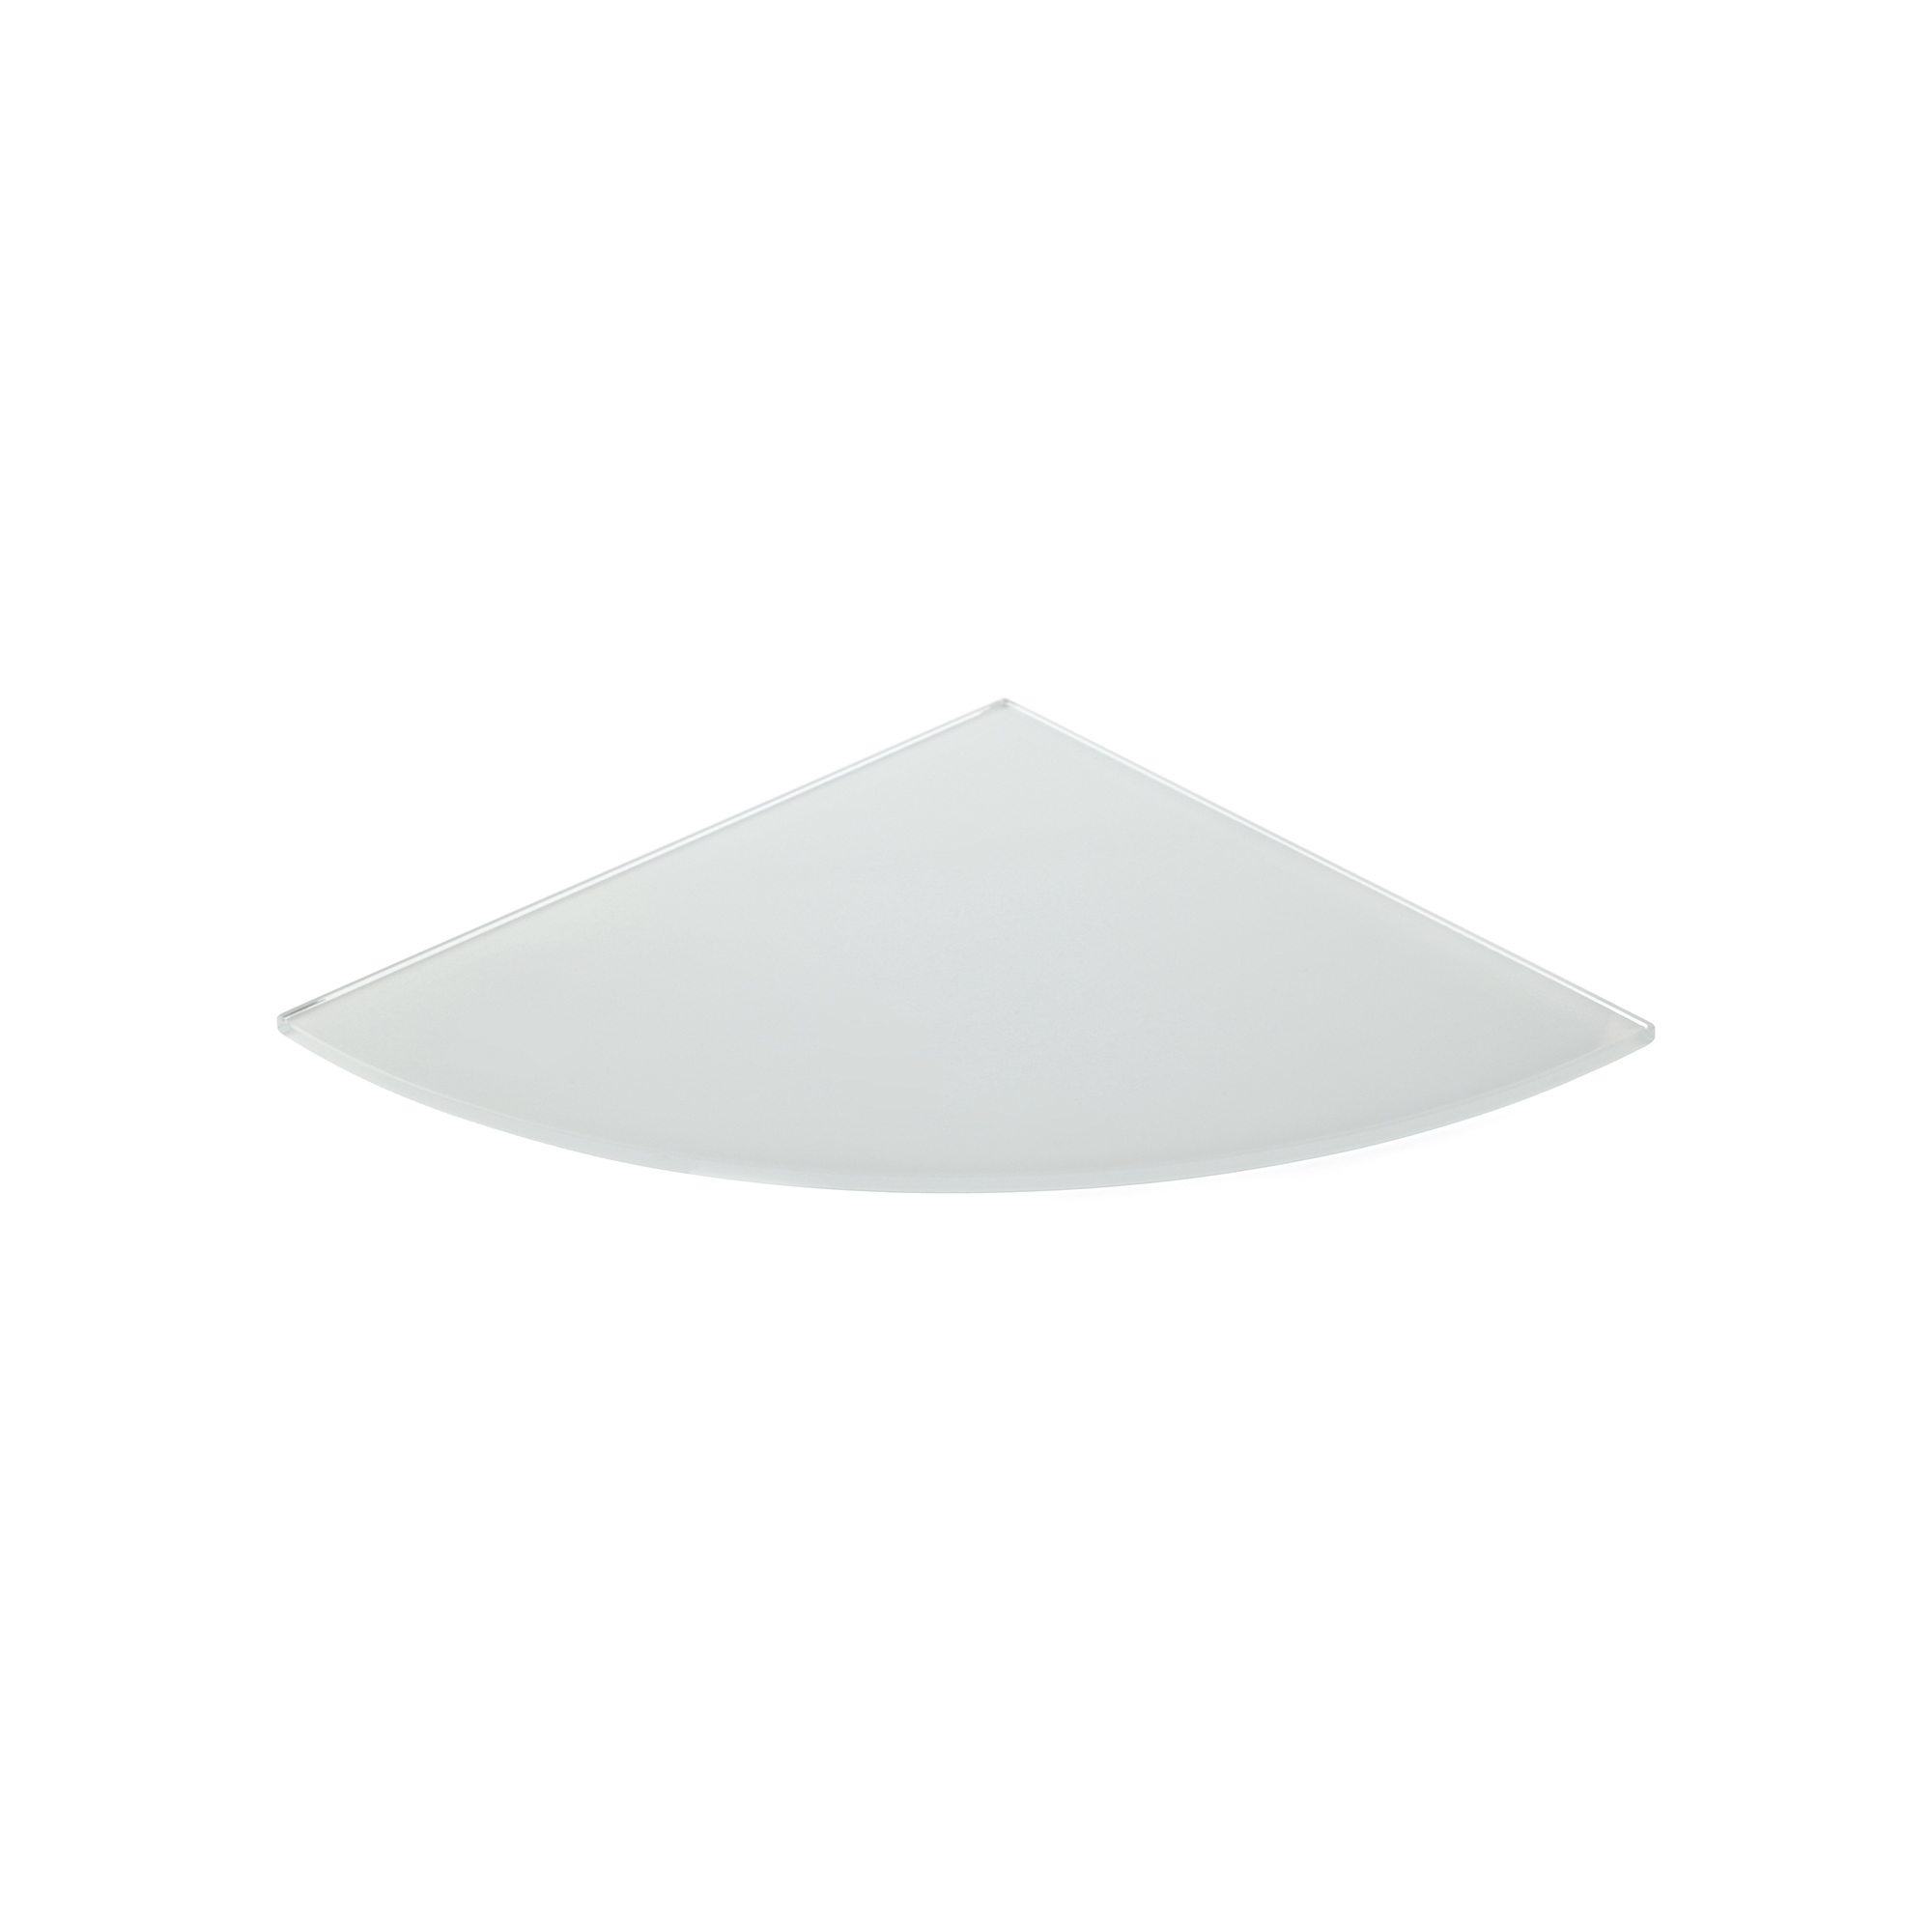 Estante de Cristal Acabado en Blanco | Medidas 250*6*250 mm | Espesor de la Balda: 6 mm | 1 Unidad